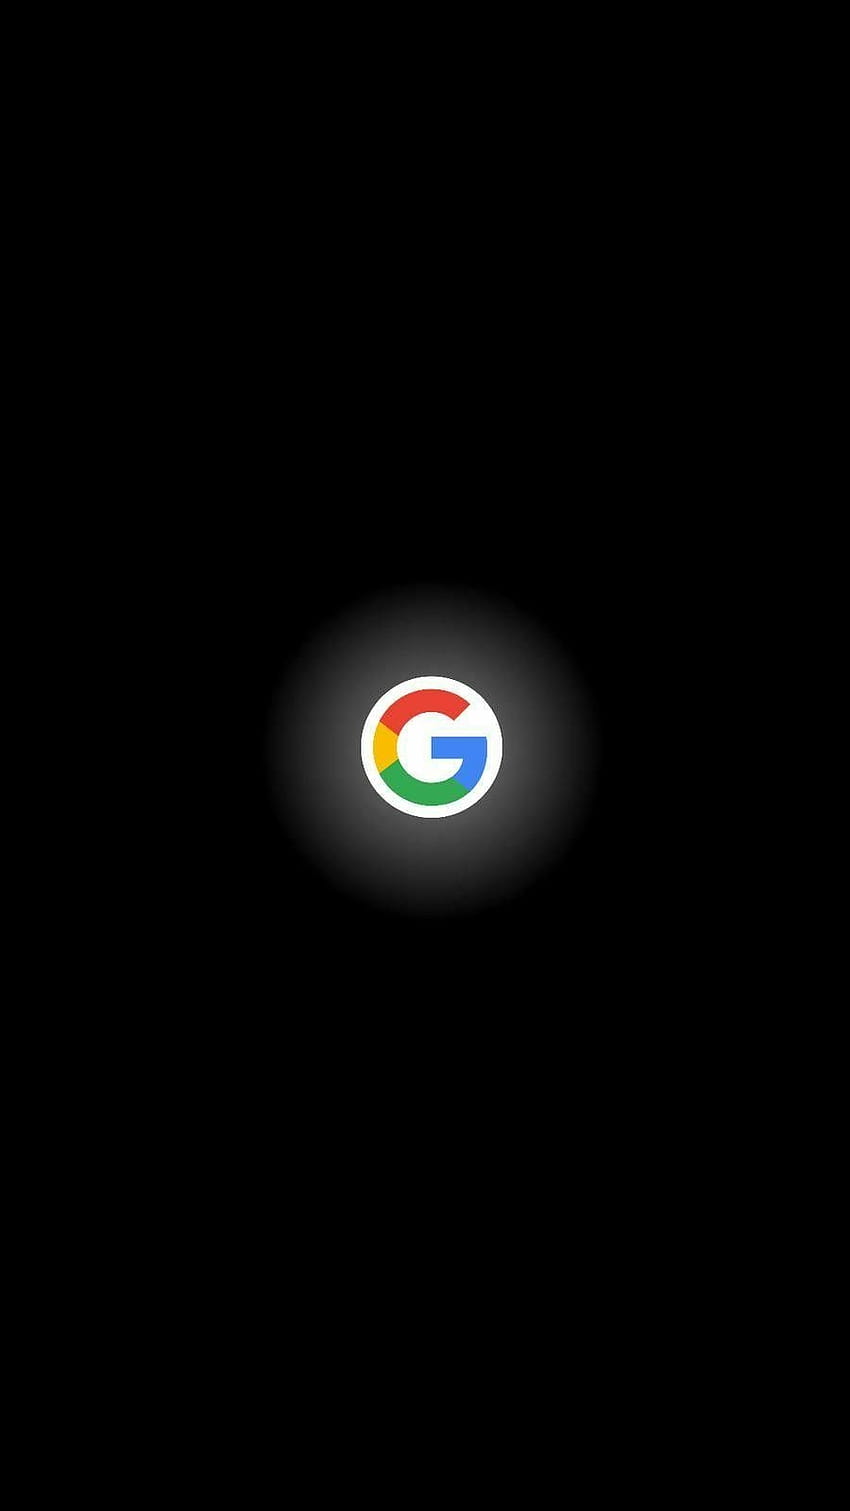 Google Android phones, dark logo mobile HD phone wallpaper